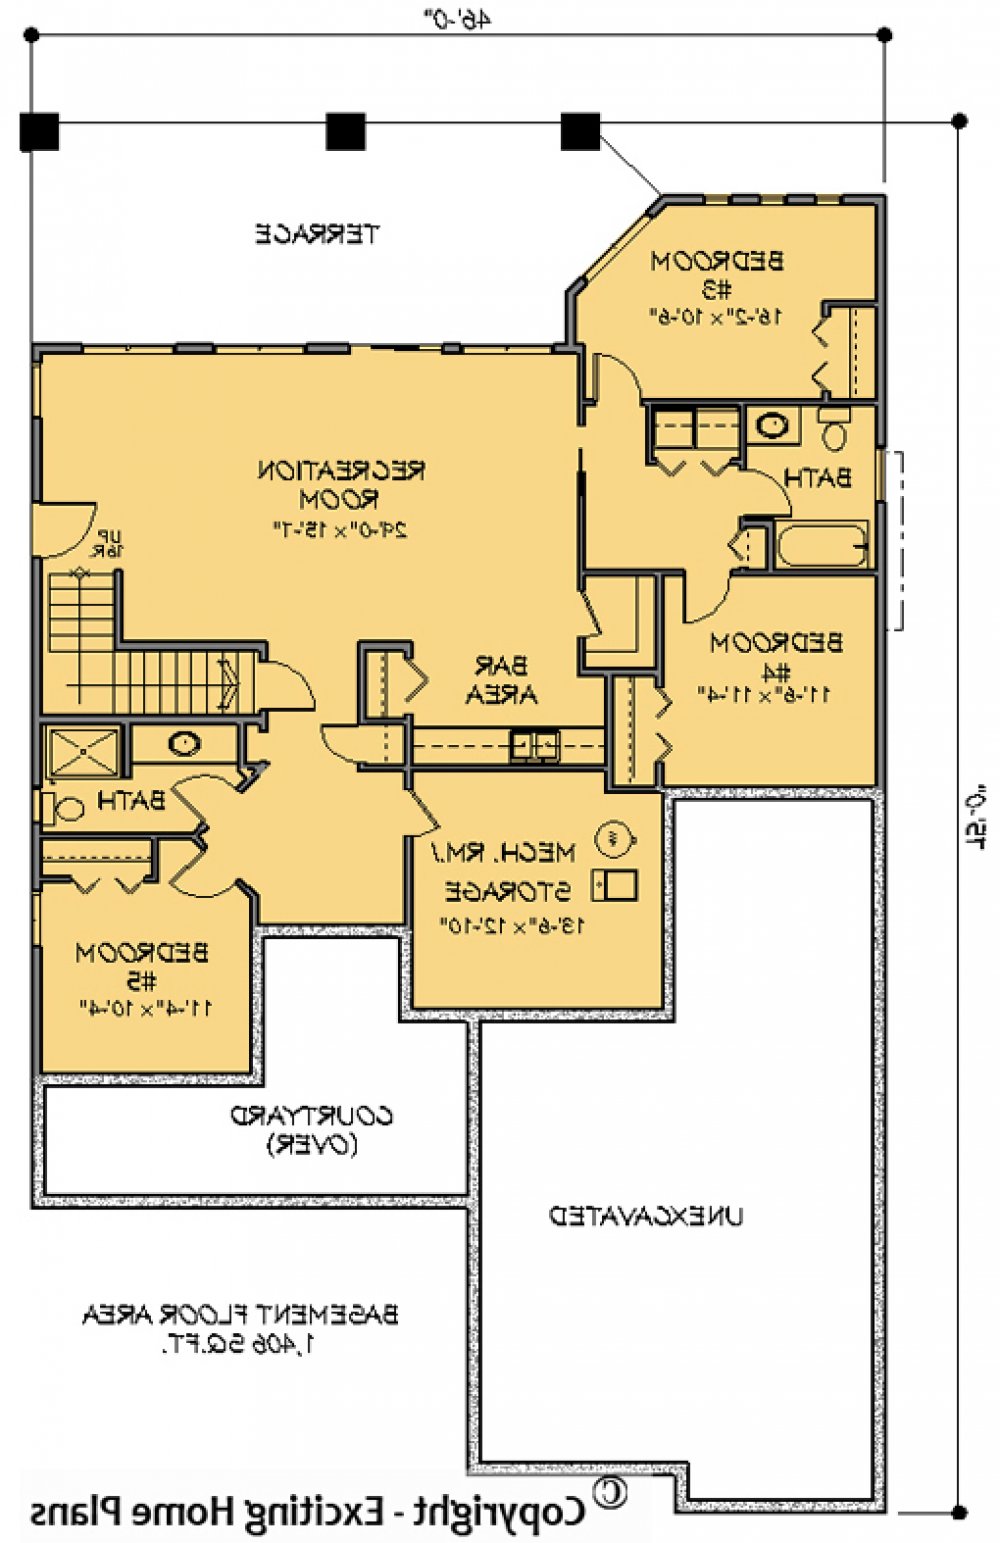 House Plan E1088-10 Lower Floor Plan REVERSE